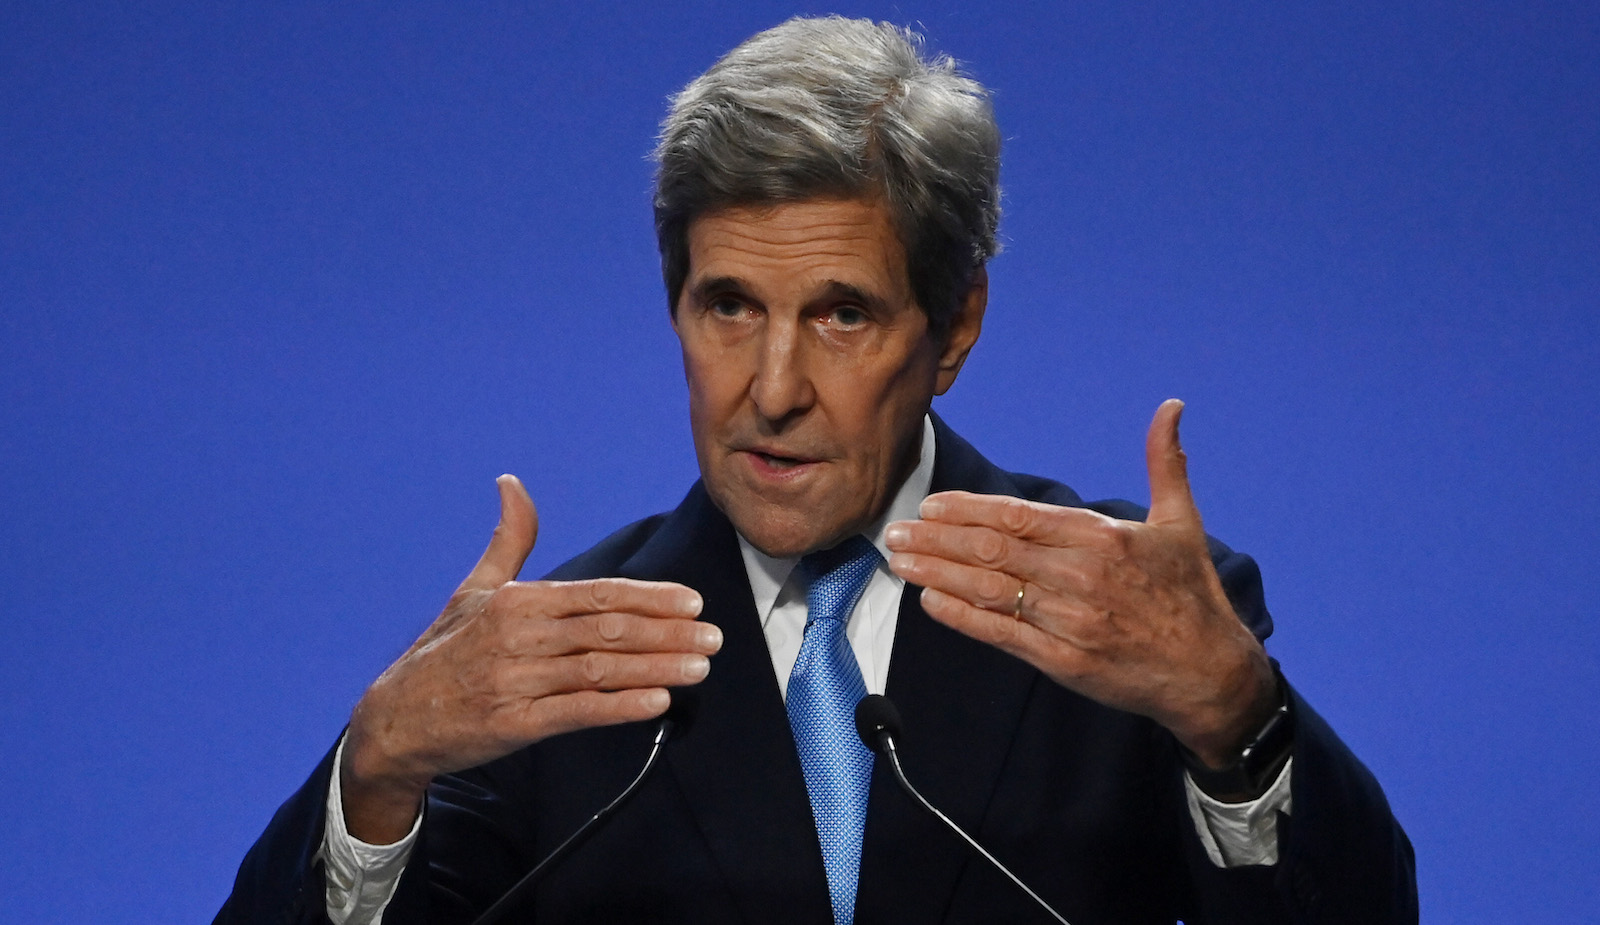 John Kerry giving a speech